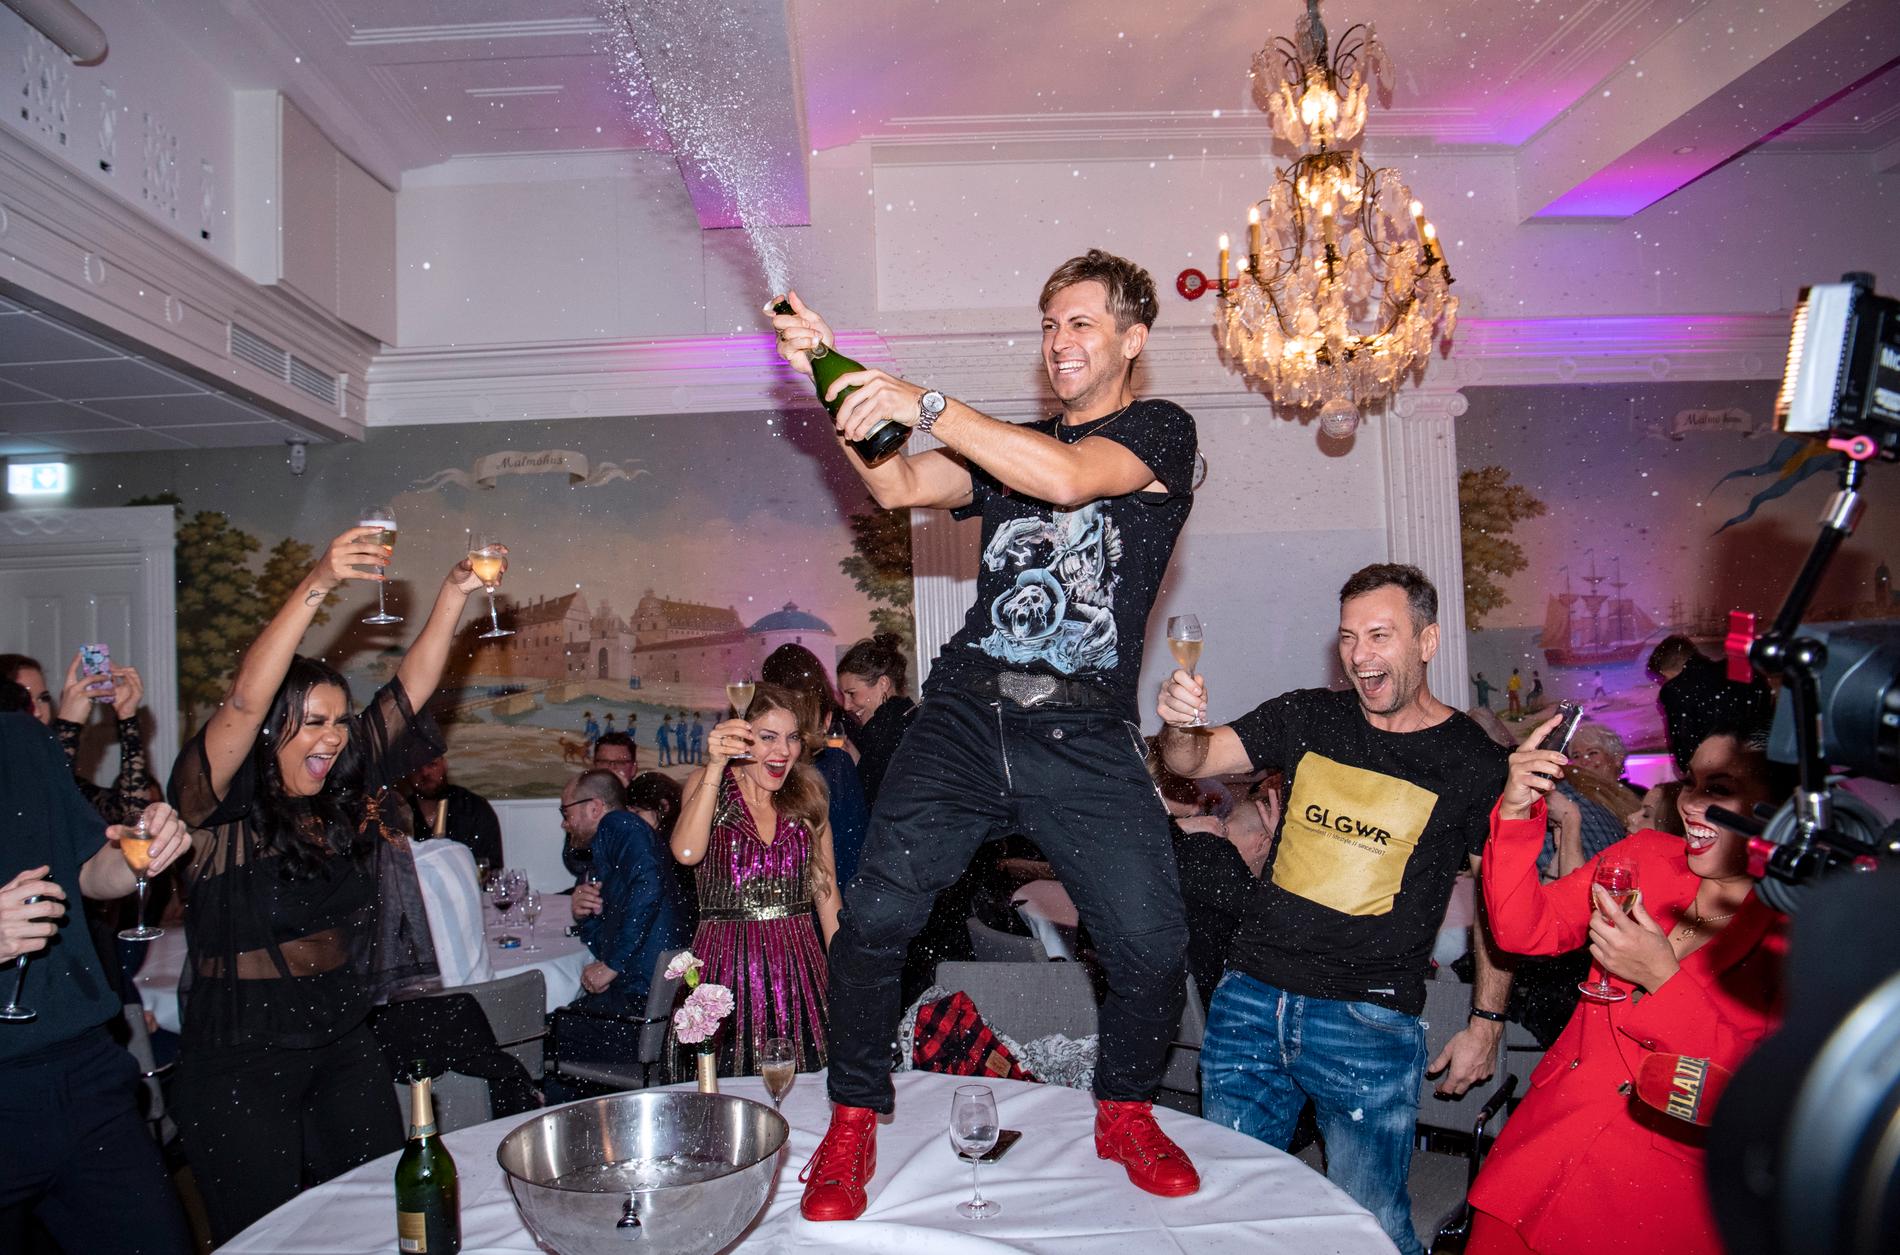 Arkiv. Vlad Reiser firar med skumpa på efterfesten på Savoy i Malmö efter att han gått vidare till andra chansen under Melodifestivalen 2019.